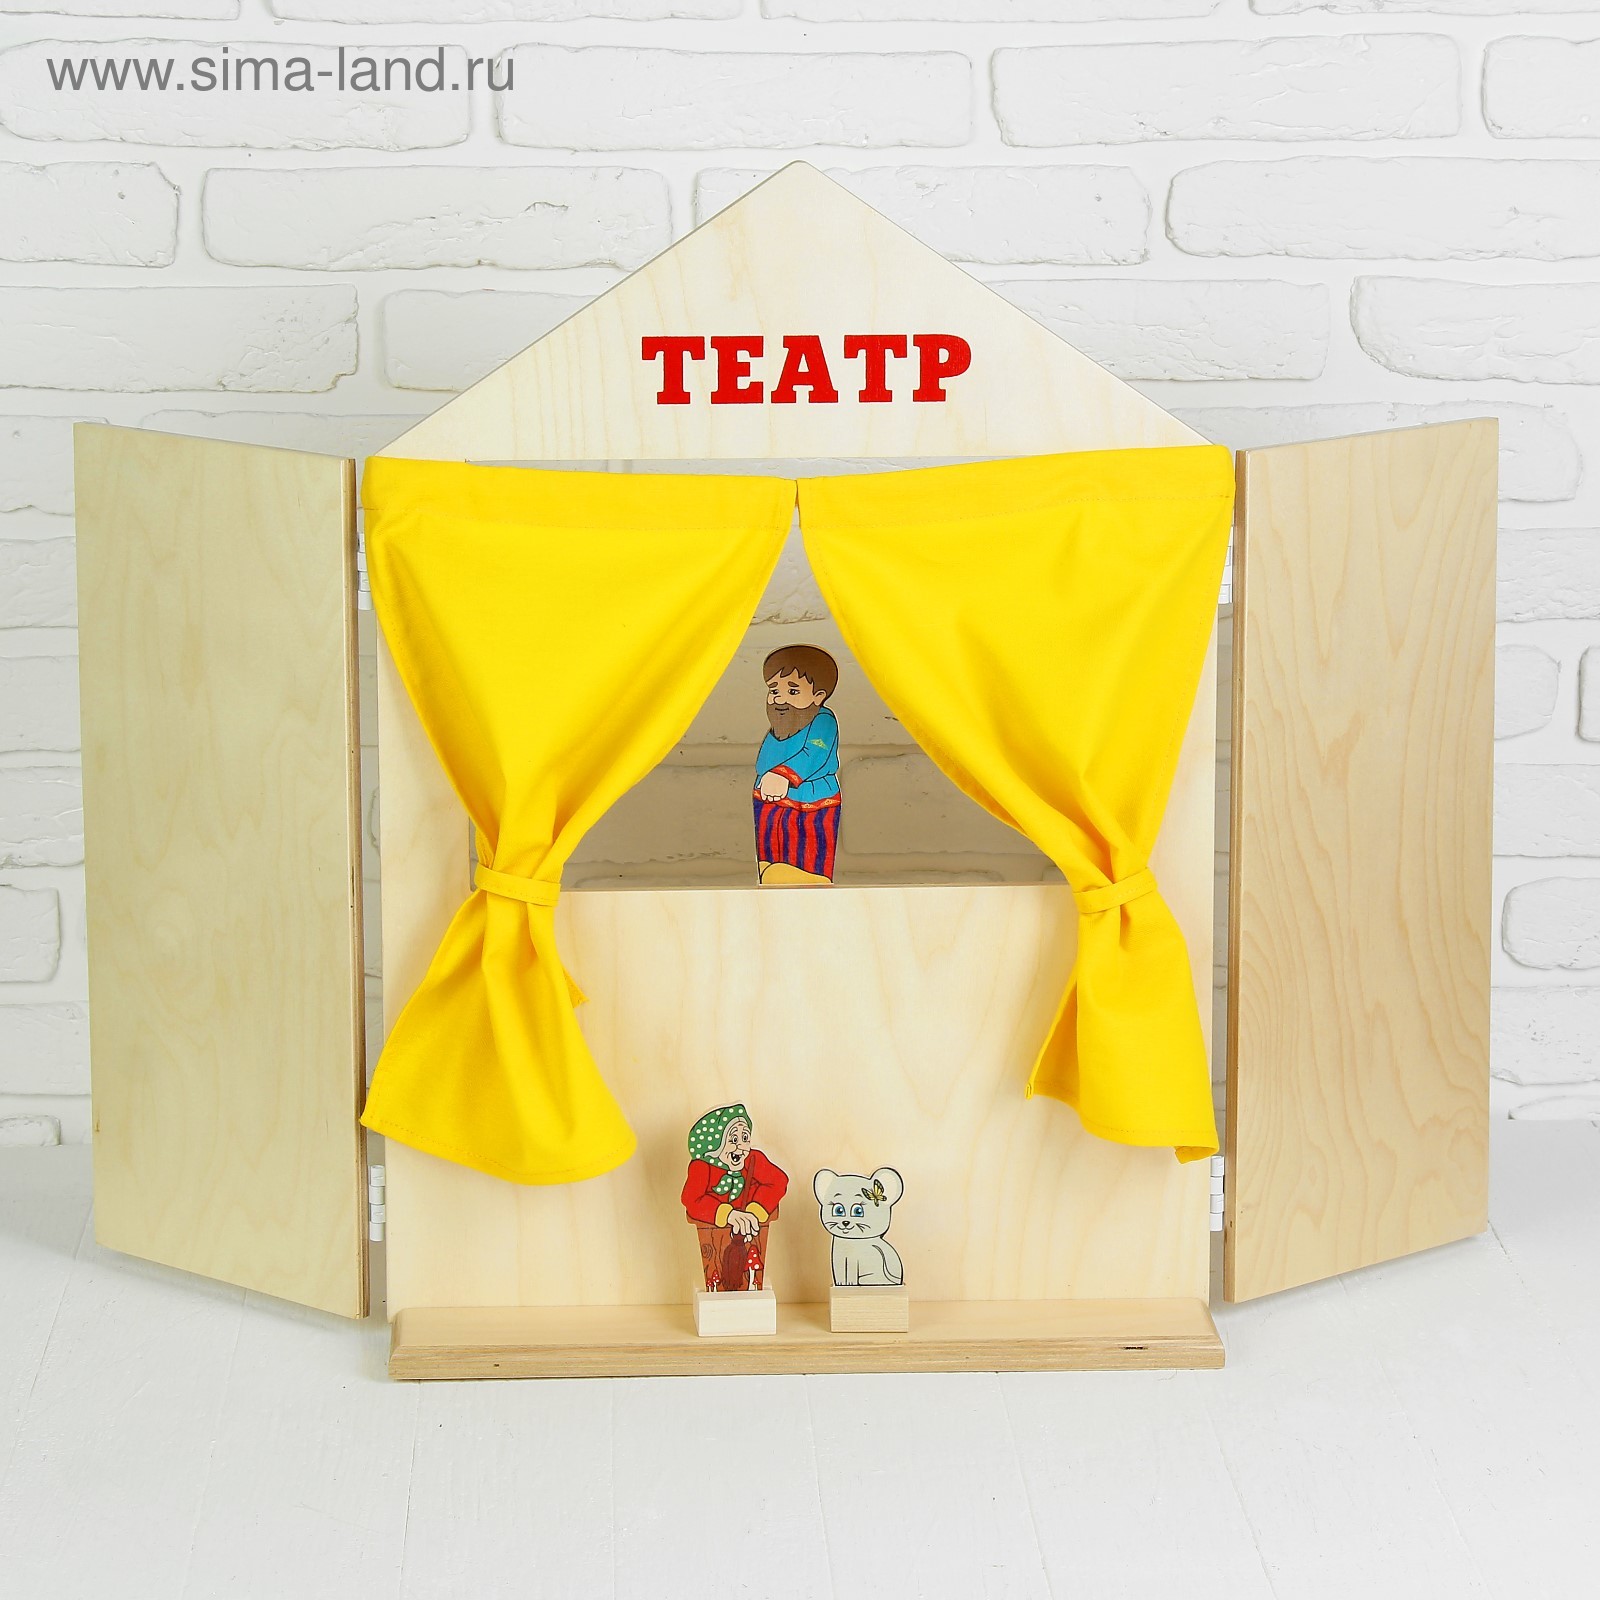 Ширма для кукольного театра из дерева с окошком для детей